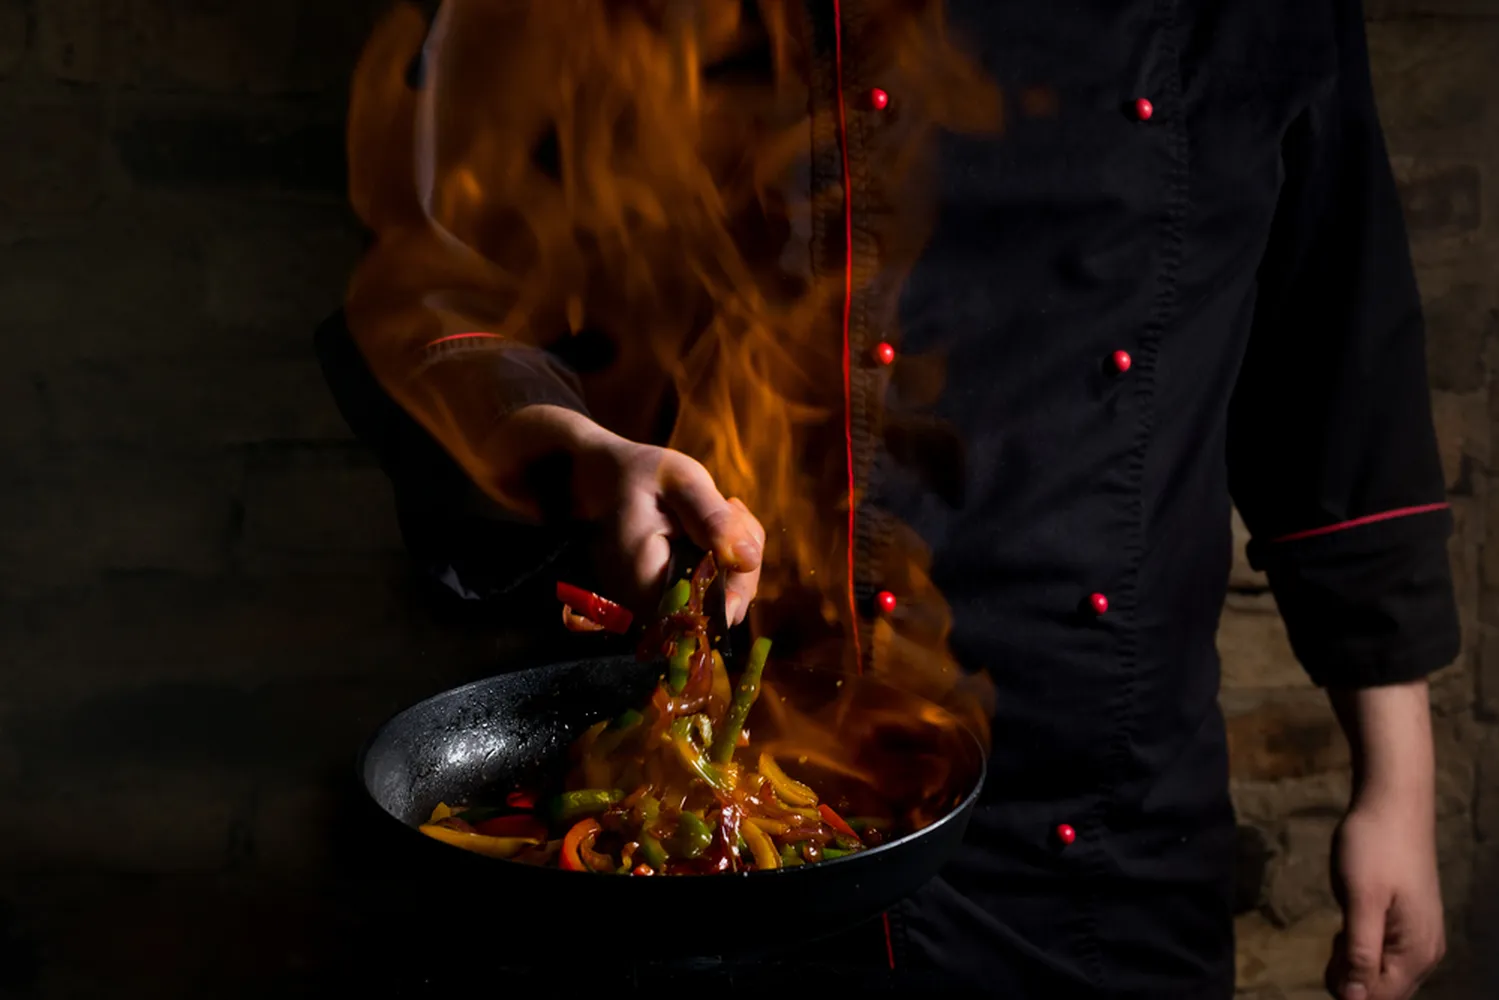 پوستر دیواری سه بعدی رستوران طرح سر آشپز